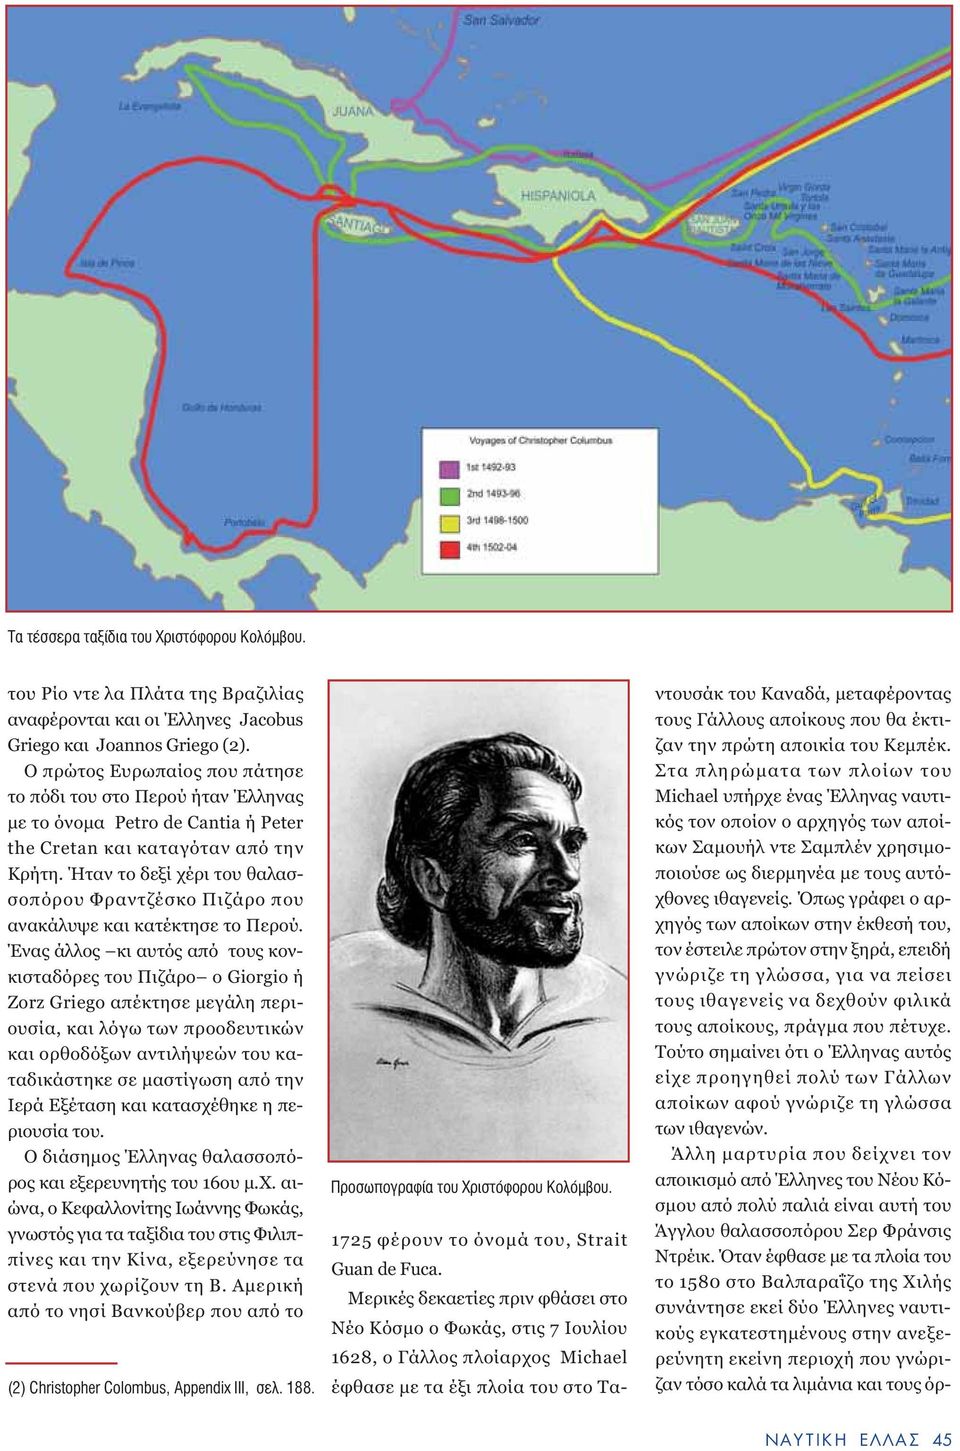 Ήταν το δεξί χέρι του θαλασσοπόρου Φραντζέσκο Πιζάρο που ανακάλυψε και κατέκτησε το Περού.